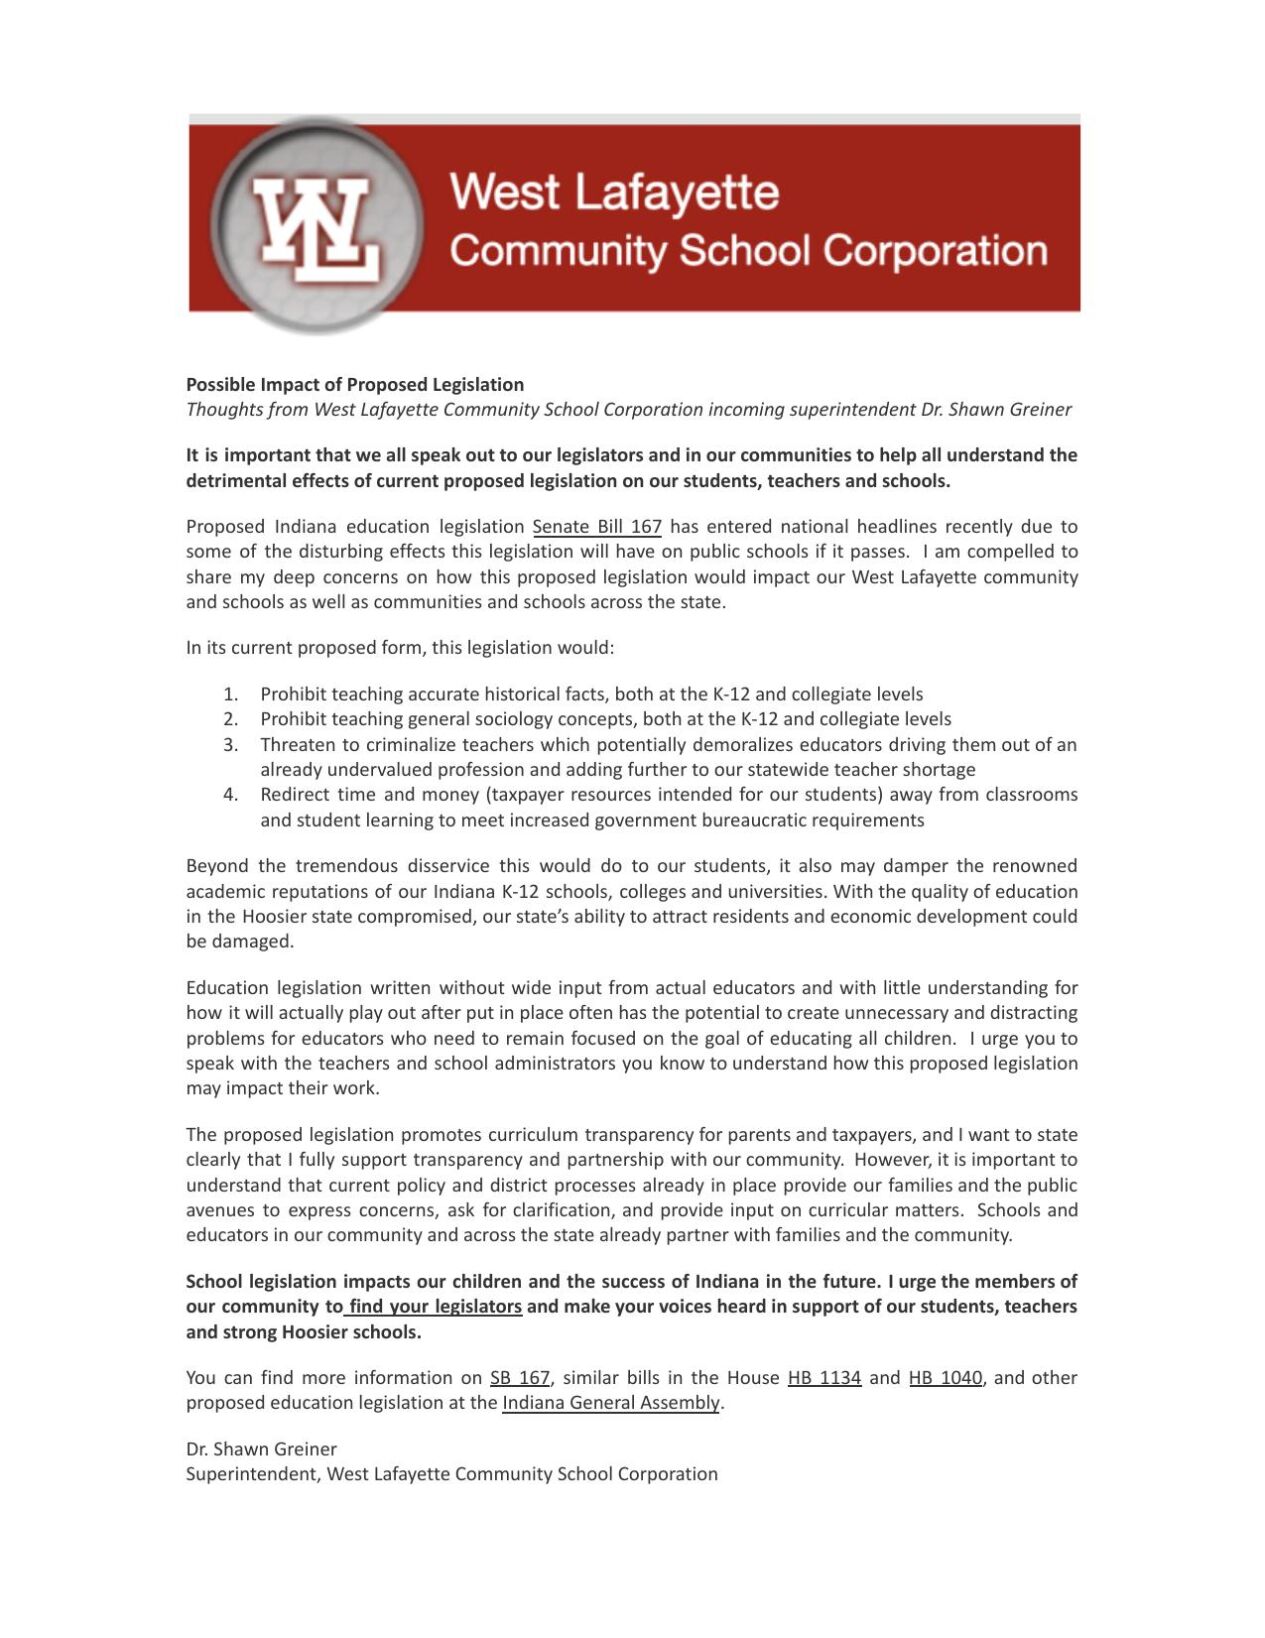 WLCSC Message about legislations